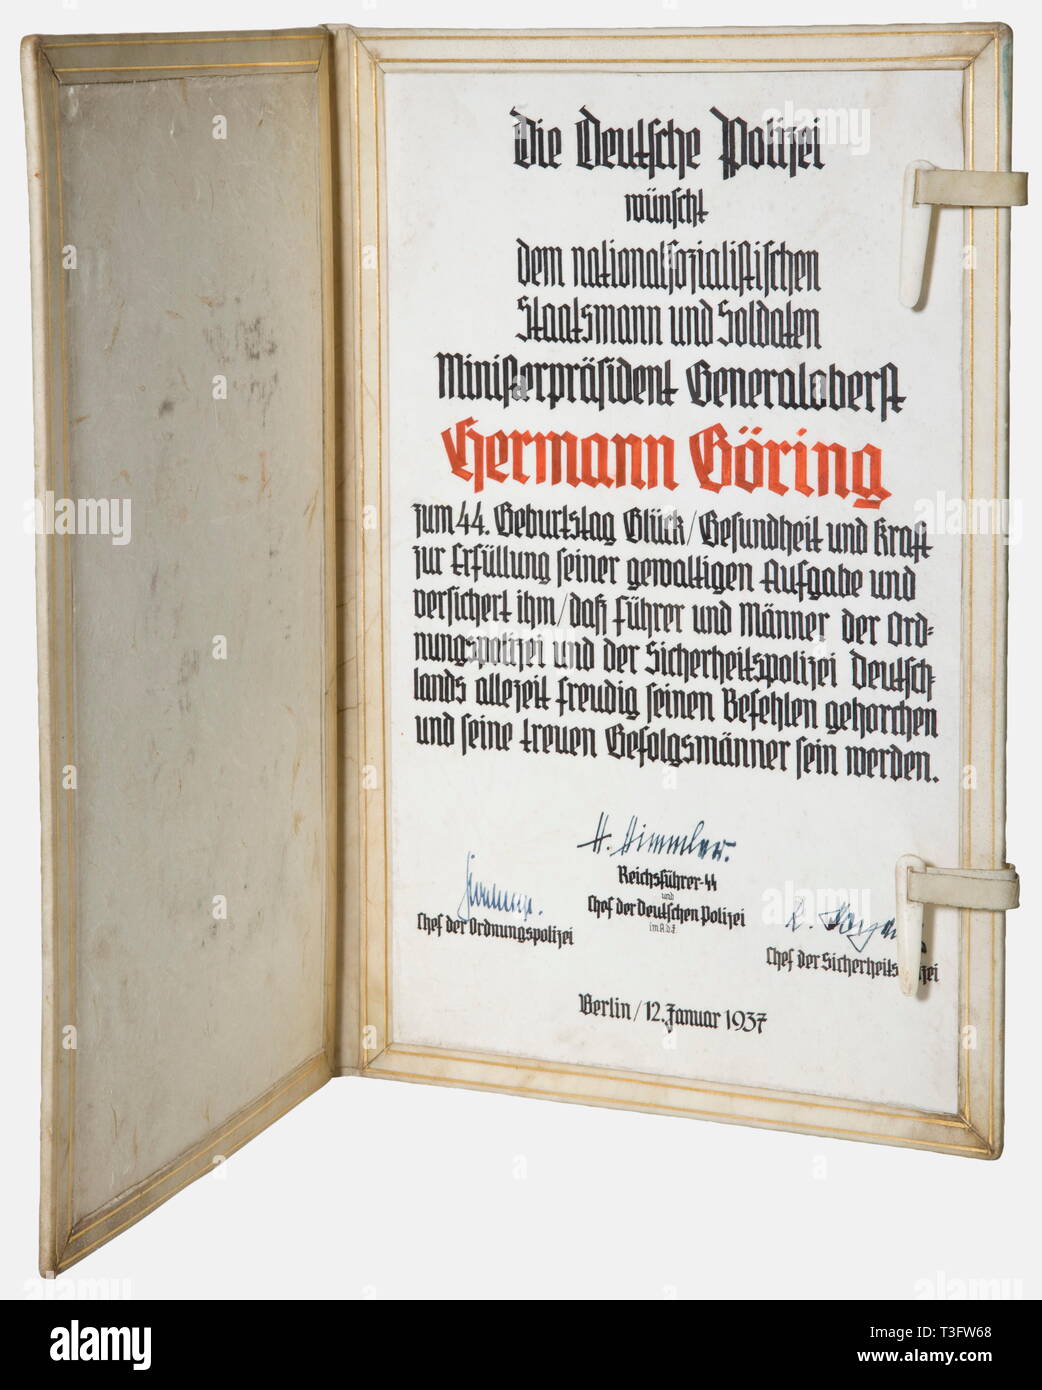 Hermann Göring, un certificato di congratulazioni dalla polizia tedesca in occasione del suo 44 compleanno cartella pergamena con il partito eagle dipinta sulla parte anteriore e di una chiusura a ginocchiera. Un foglio di pergamena impostato nel lato destro con una calligrafica messaggio di congratulazioni e le espressioni di lealtà. 12 gennaio 1937. Con le firme di inchiostro di Heinrich Himmler, Reinhard Heydrich, e Kurt Daluege. storica, storica degli anni trenta del ventesimo secolo, NS, il socialismo nazionale, il nazismo, il terzo Reich, Reich tedesco, in Germania, in tedesco, nazionale socialista, nazista, periodo nazista, fascista, oggetto, gli oggetti Editorial-Use-solo Foto Stock